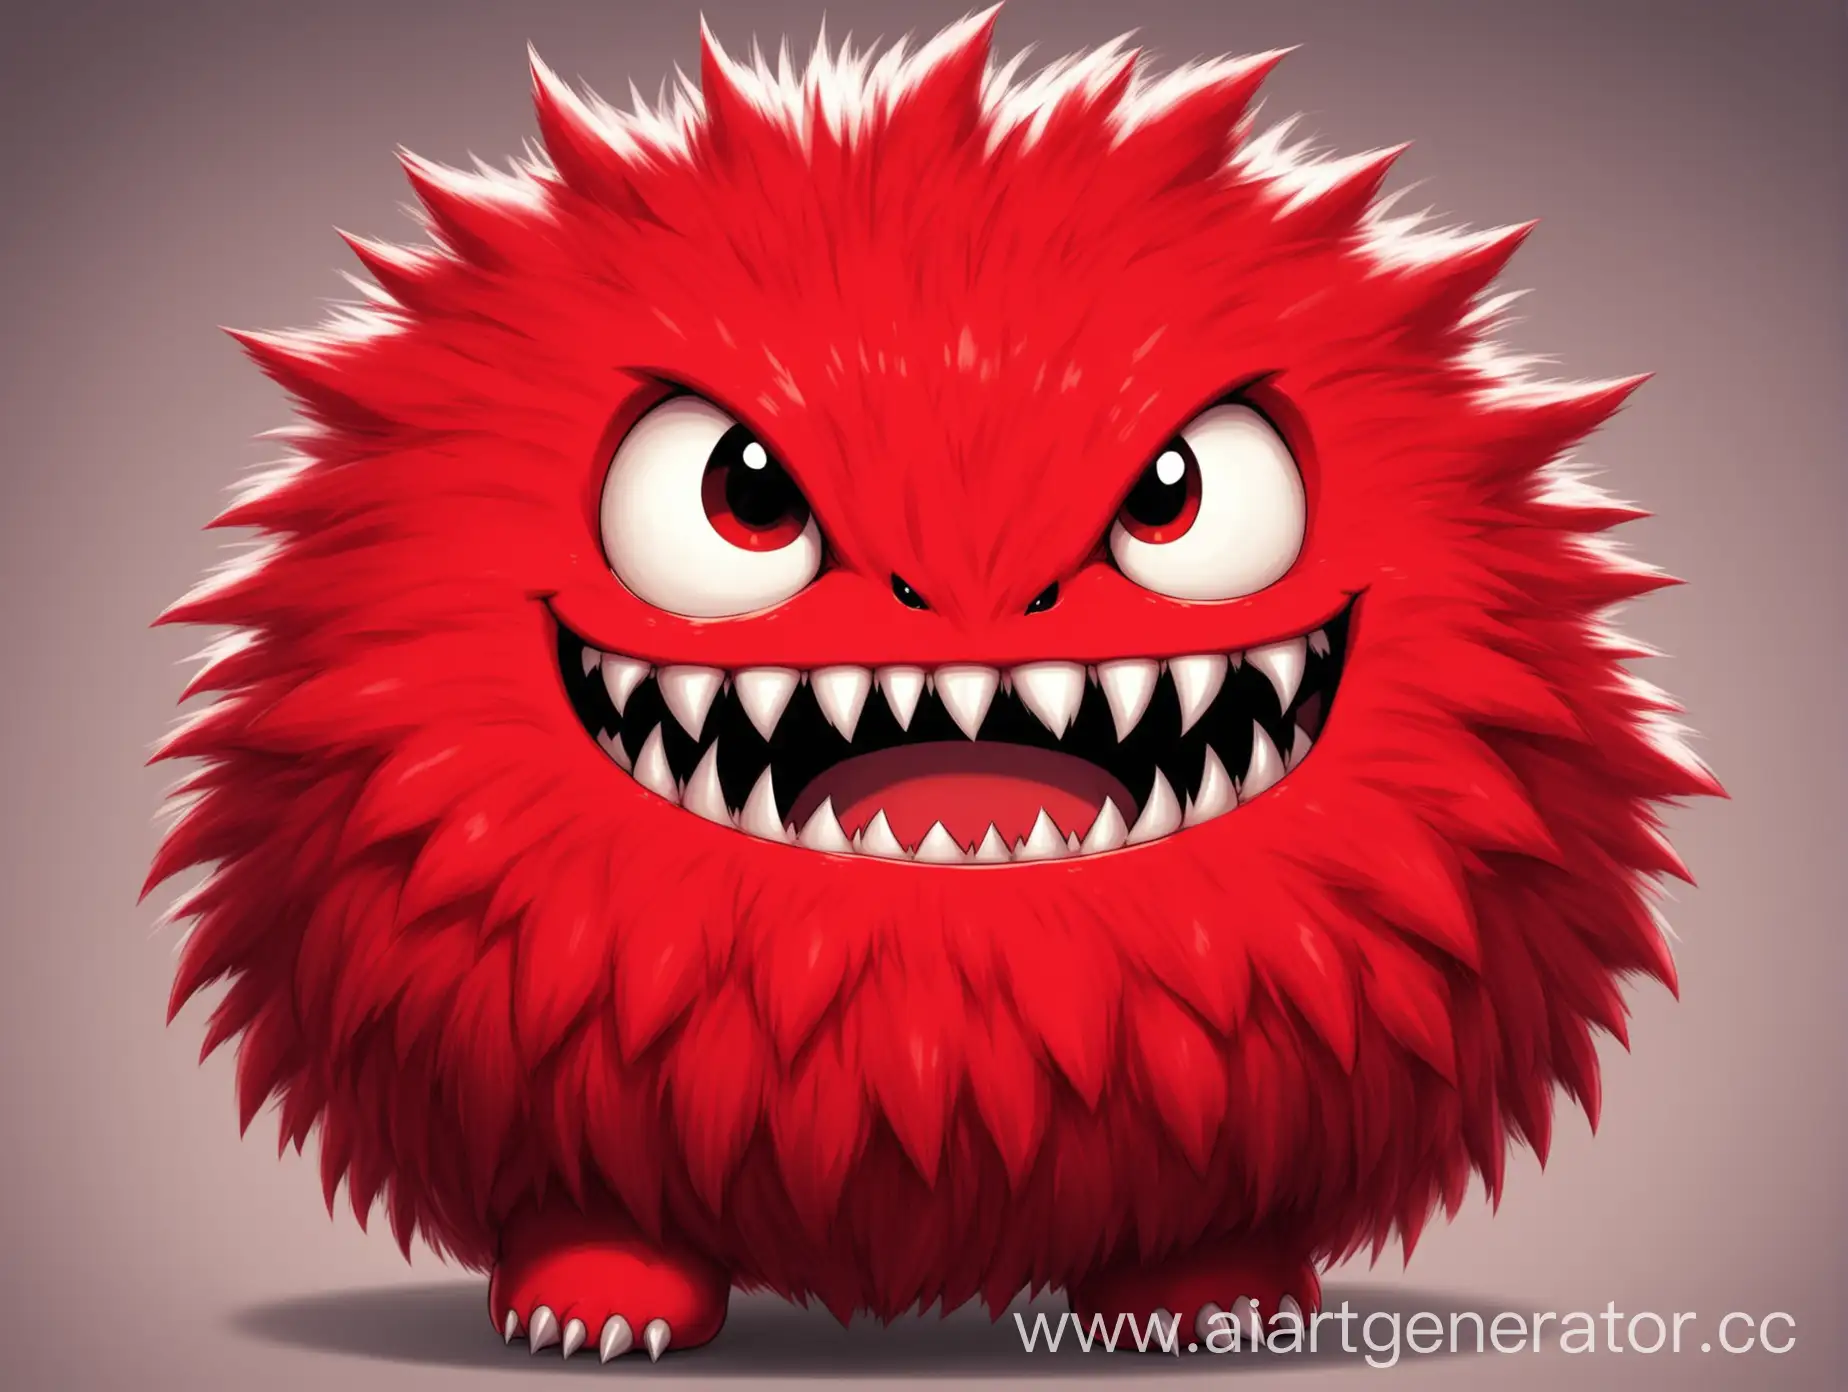 Маленький круглый пушистый монстр, красный, улыбается, острые зубы, агрессивный, милый